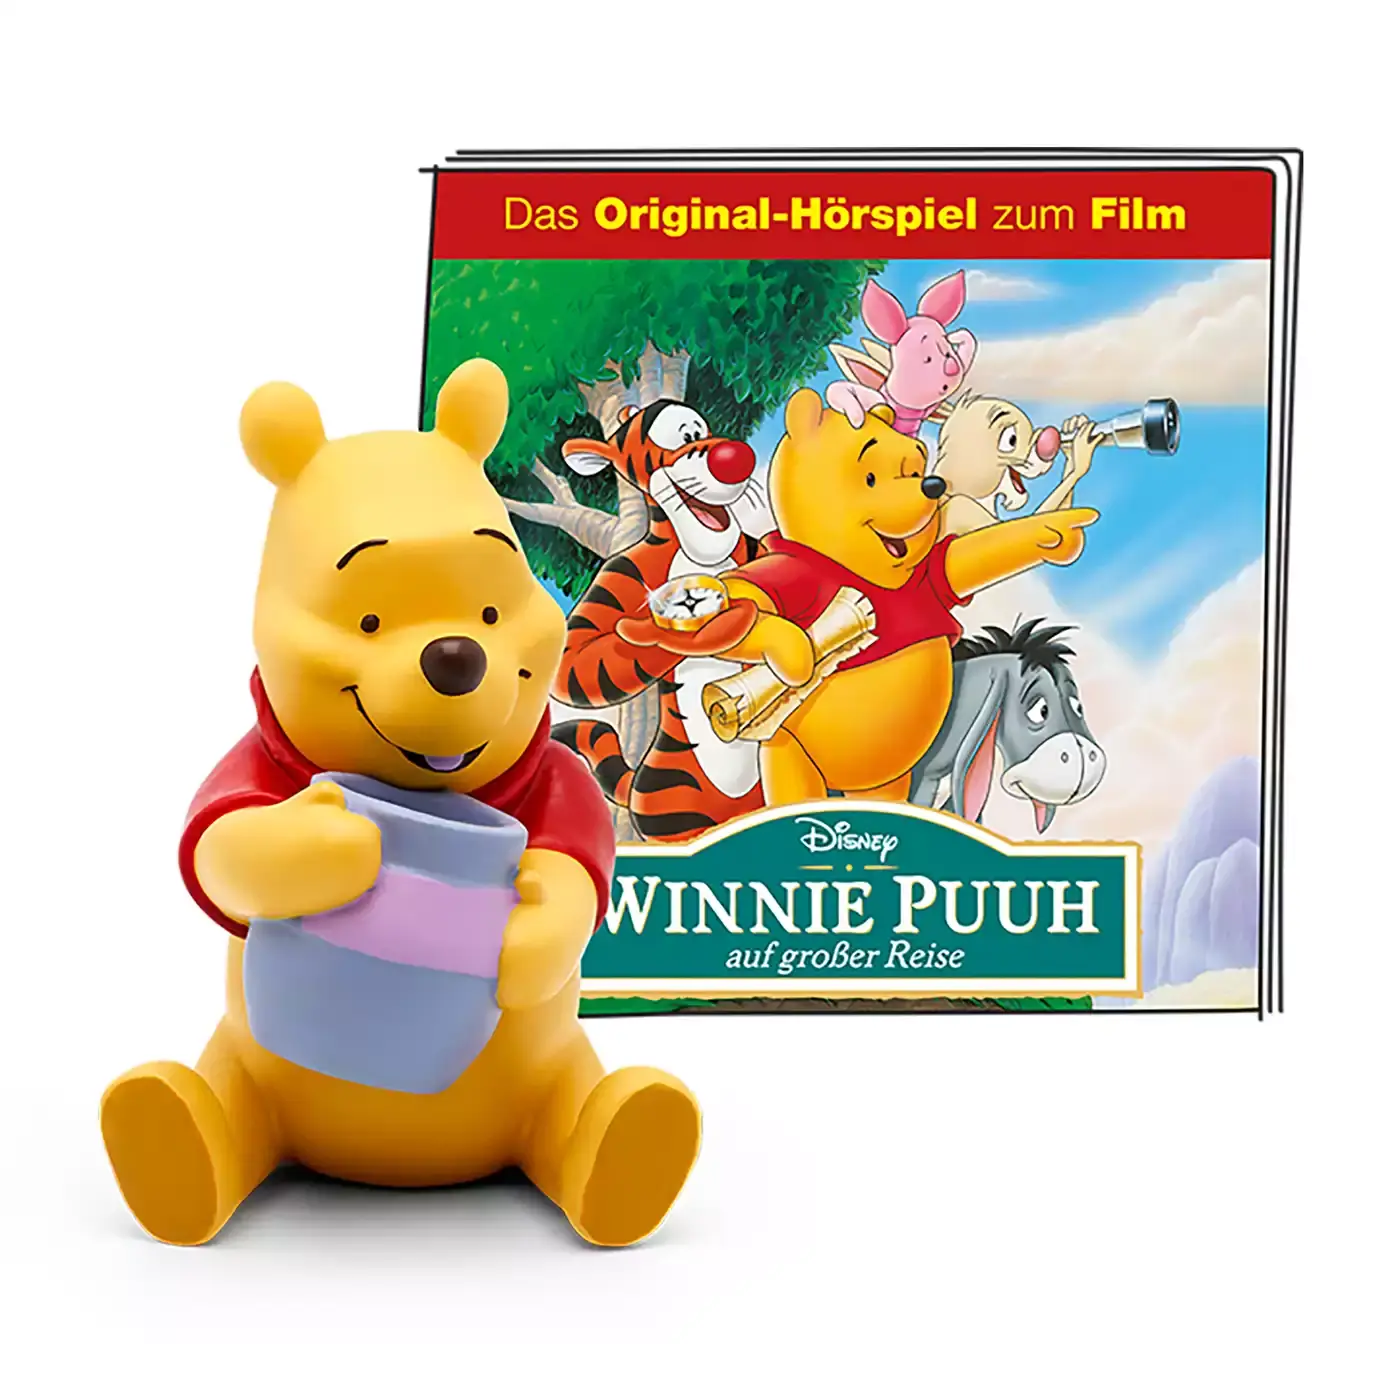 Disney - Winnie Puuh auf großer Reise tonies 2000580093407 1